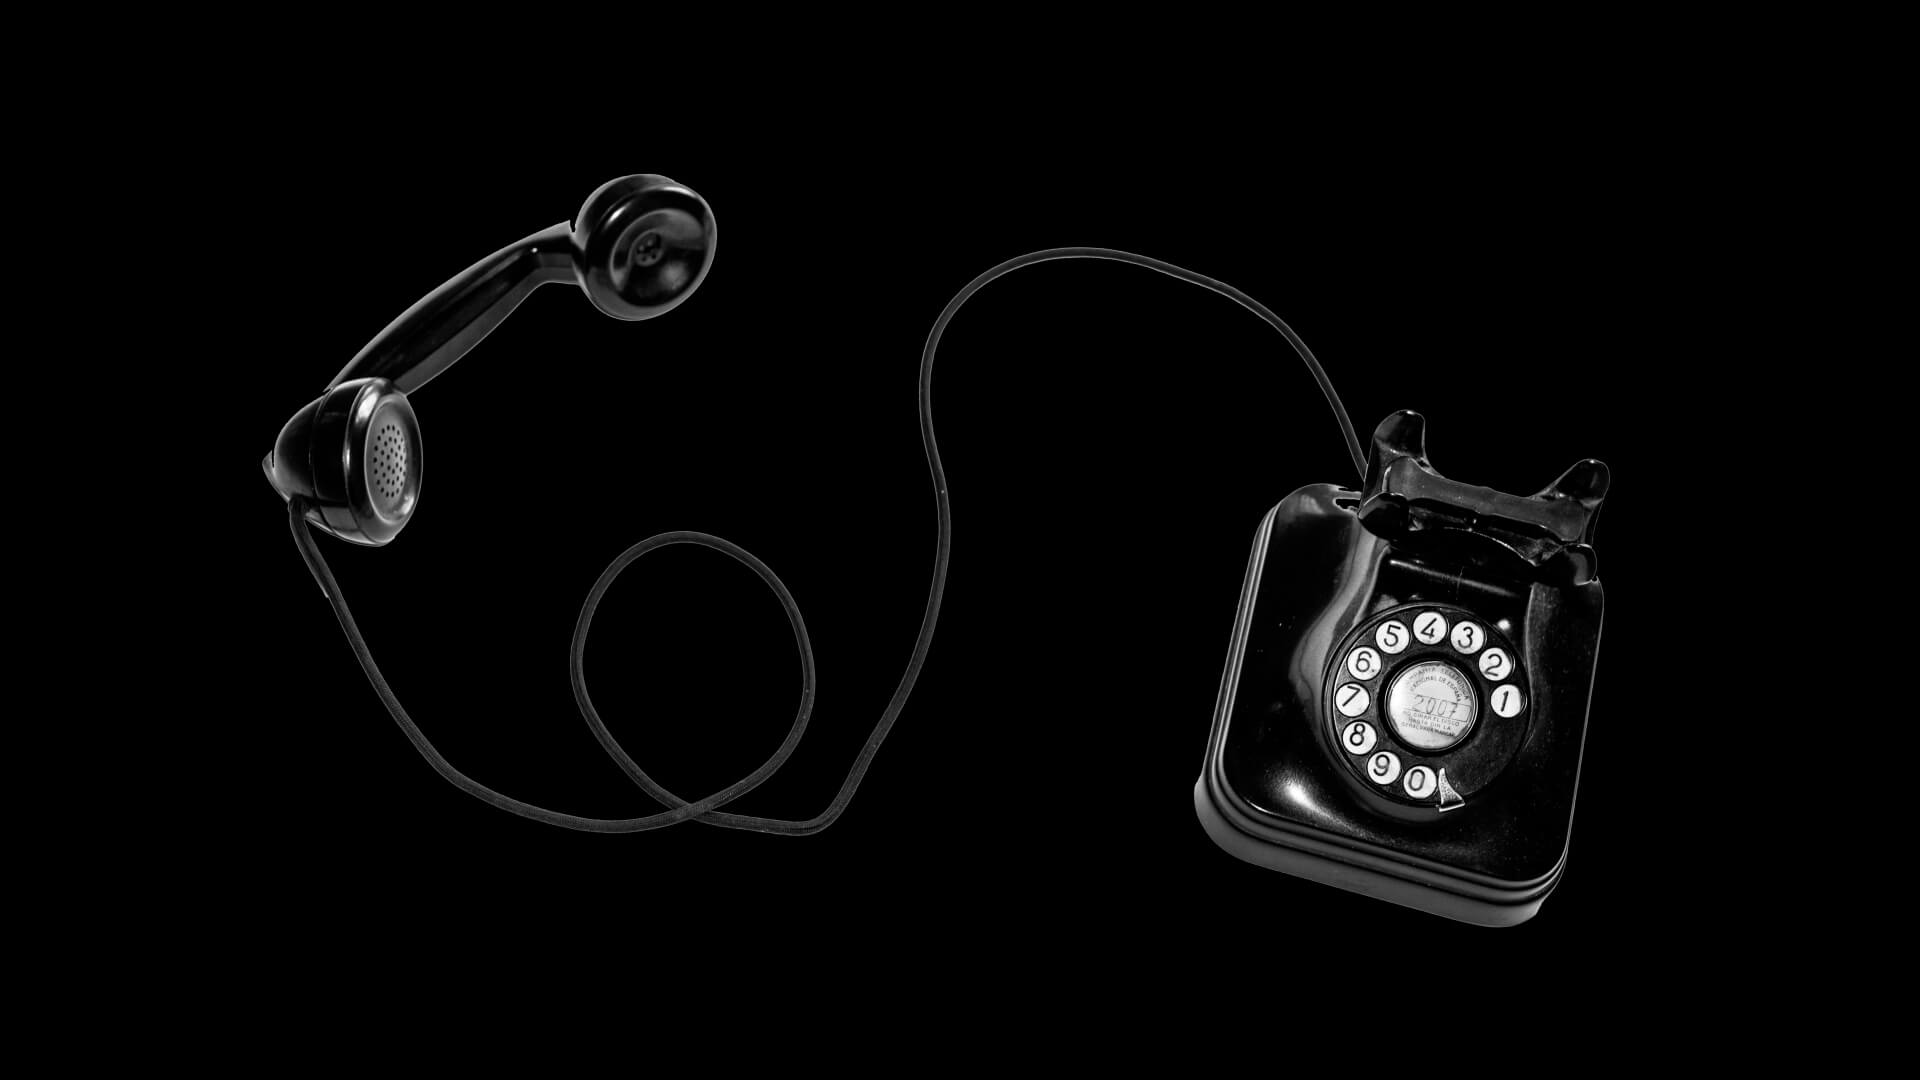 Telefone vintage